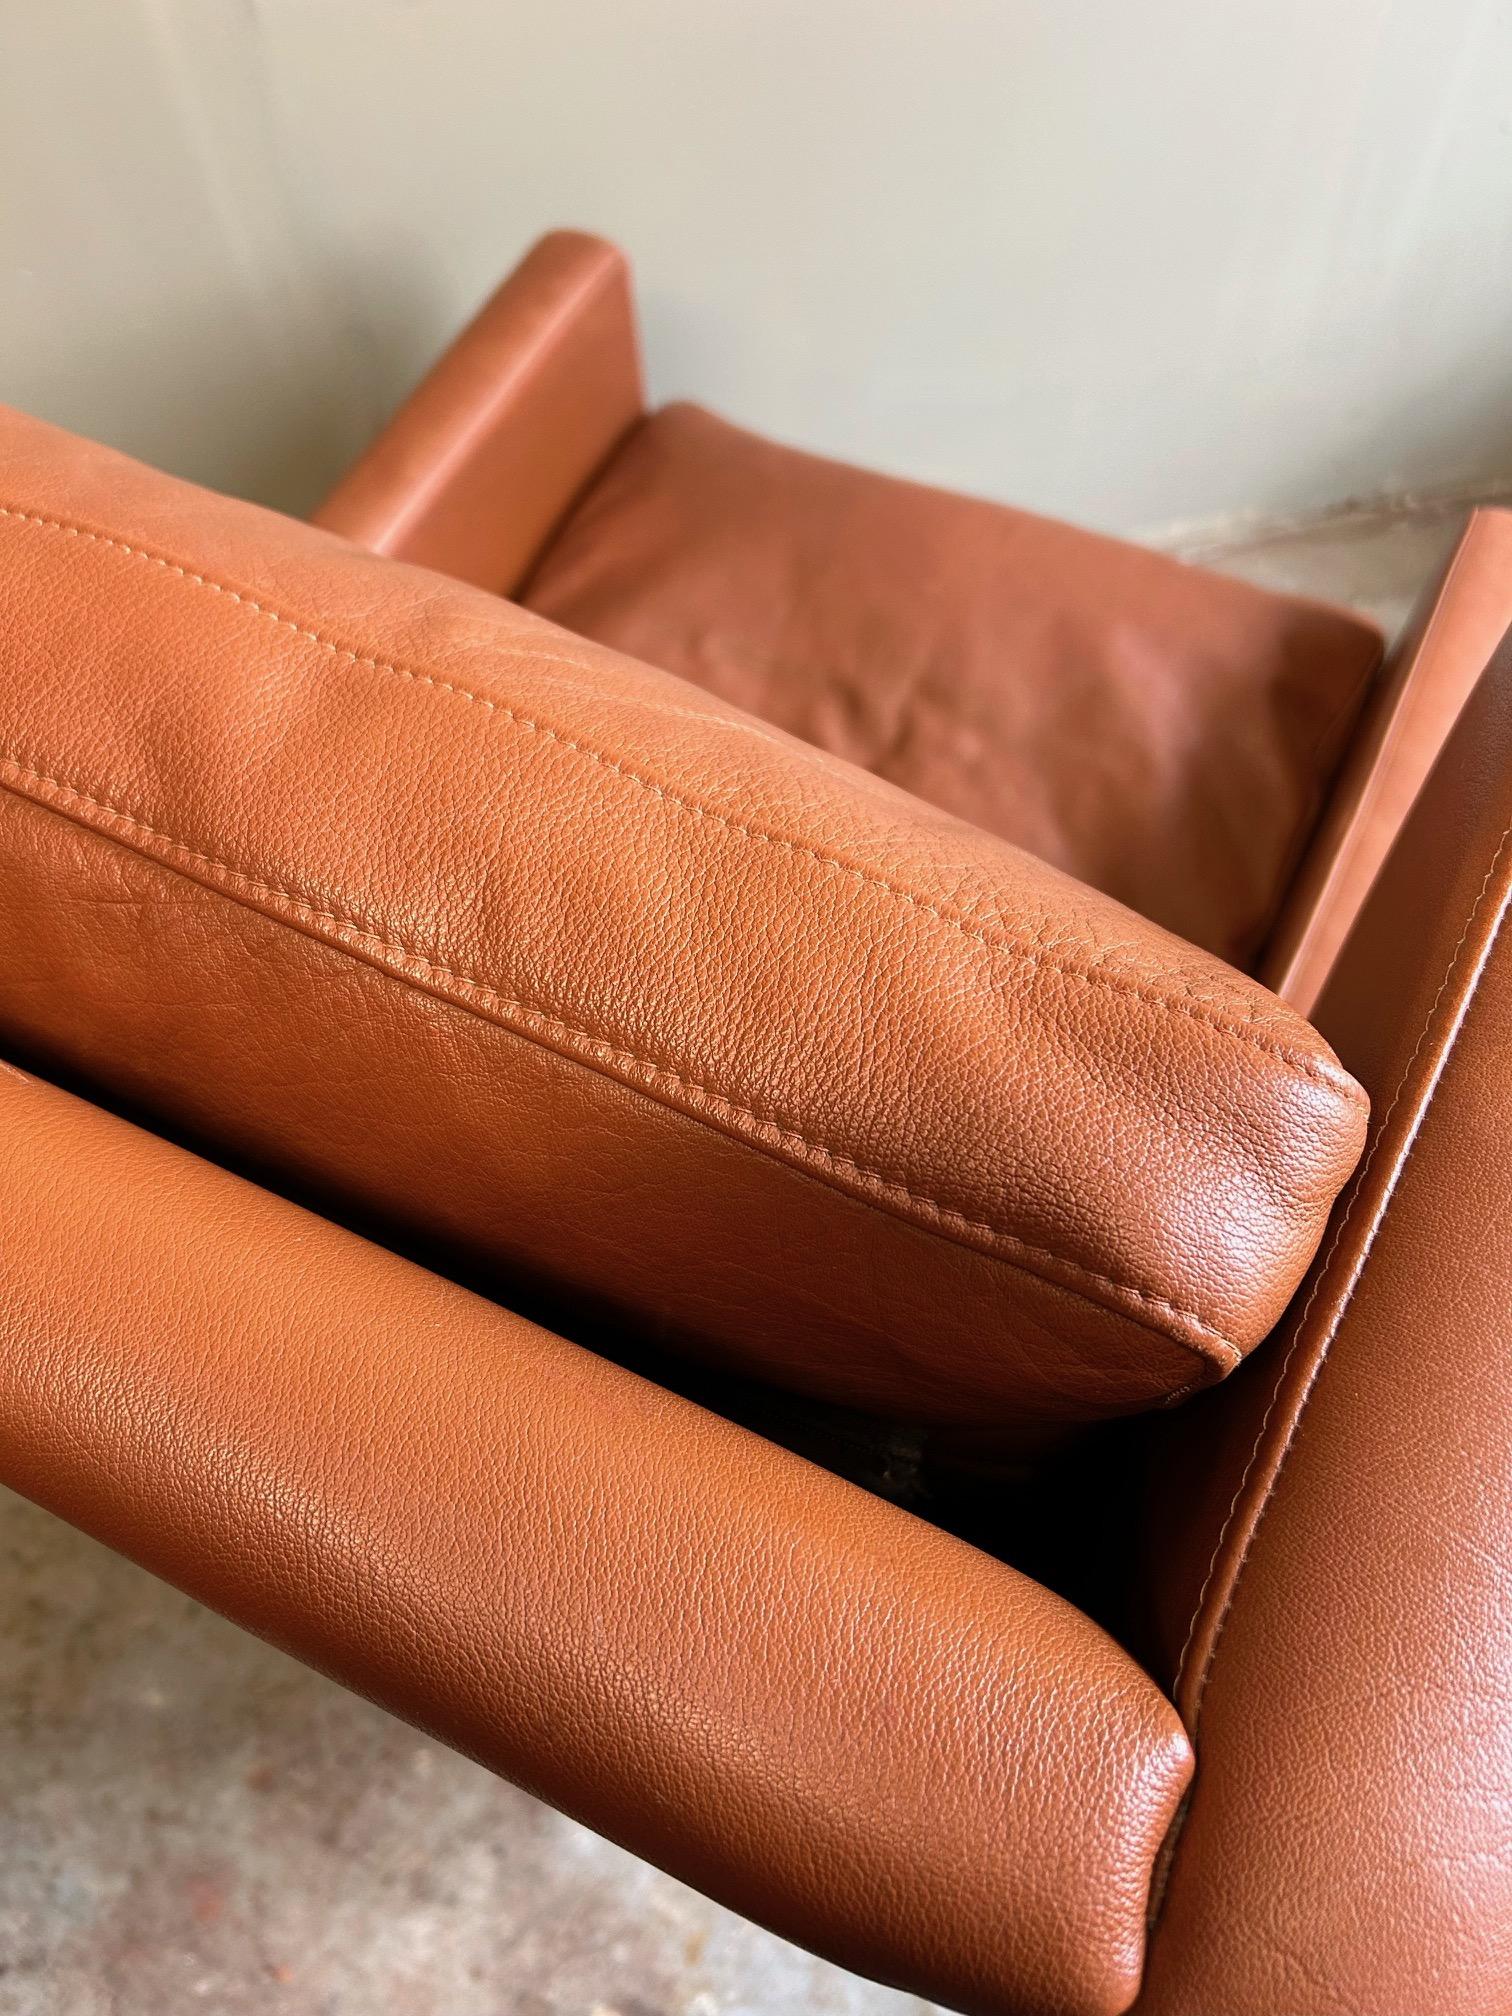 Dieser schöne dänische Hochlehner-Sessel von Stouby aus hellbraunem Leder ist eine stilvolle Ergänzung für jeden Wohn- oder Arbeitsbereich.

Der Stuhl hat eine breite Sitzfläche und eine gepolsterte Rückenlehne für mehr Komfort. Ein markantes Stück